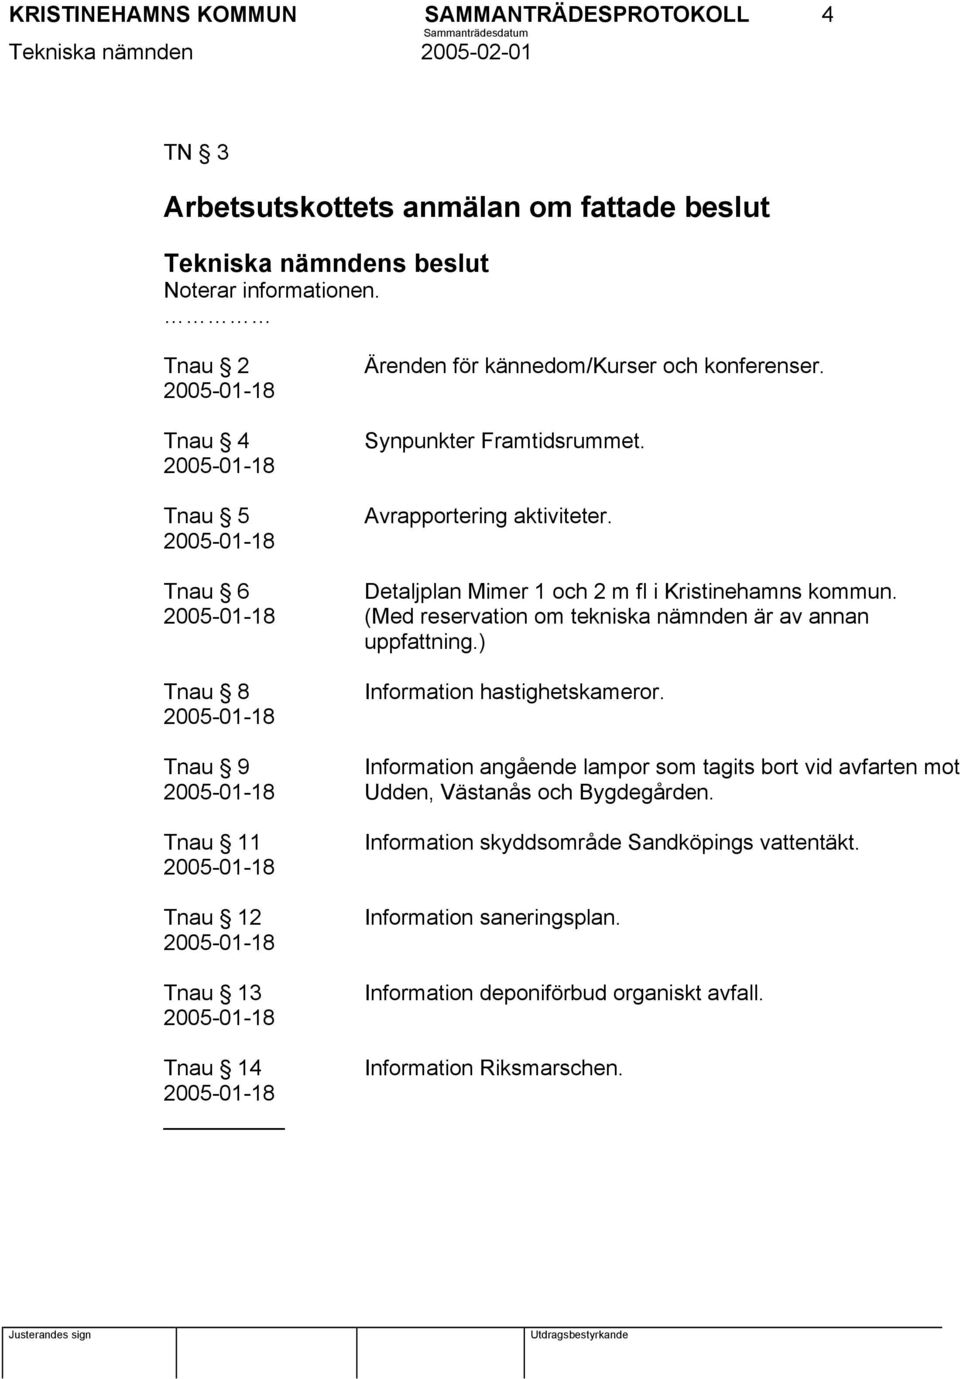 Tnau 6 Detaljplan Mimer 1 och 2 m fl i Kristinehamns kommun. (Med reservation om tekniska nämnden är av annan uppfattning.) Tnau 8 Information hastighetskameror.